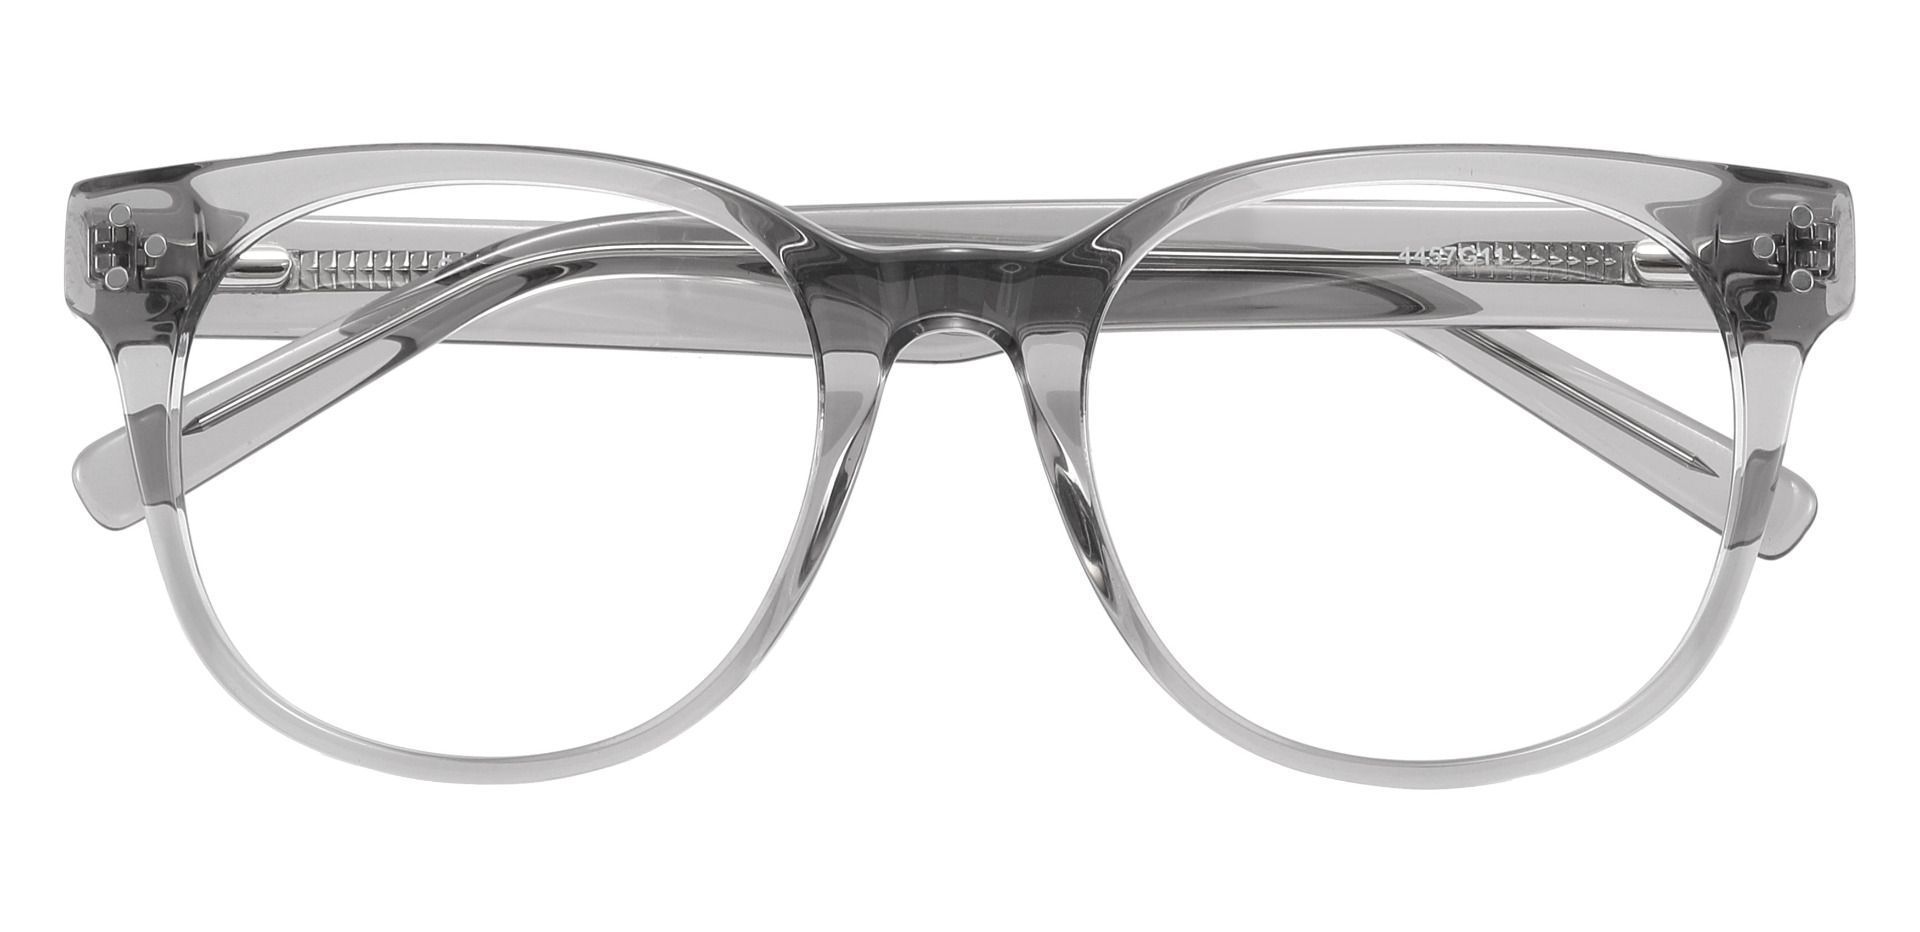 Orwell Oval Prescription Glasses - Gray